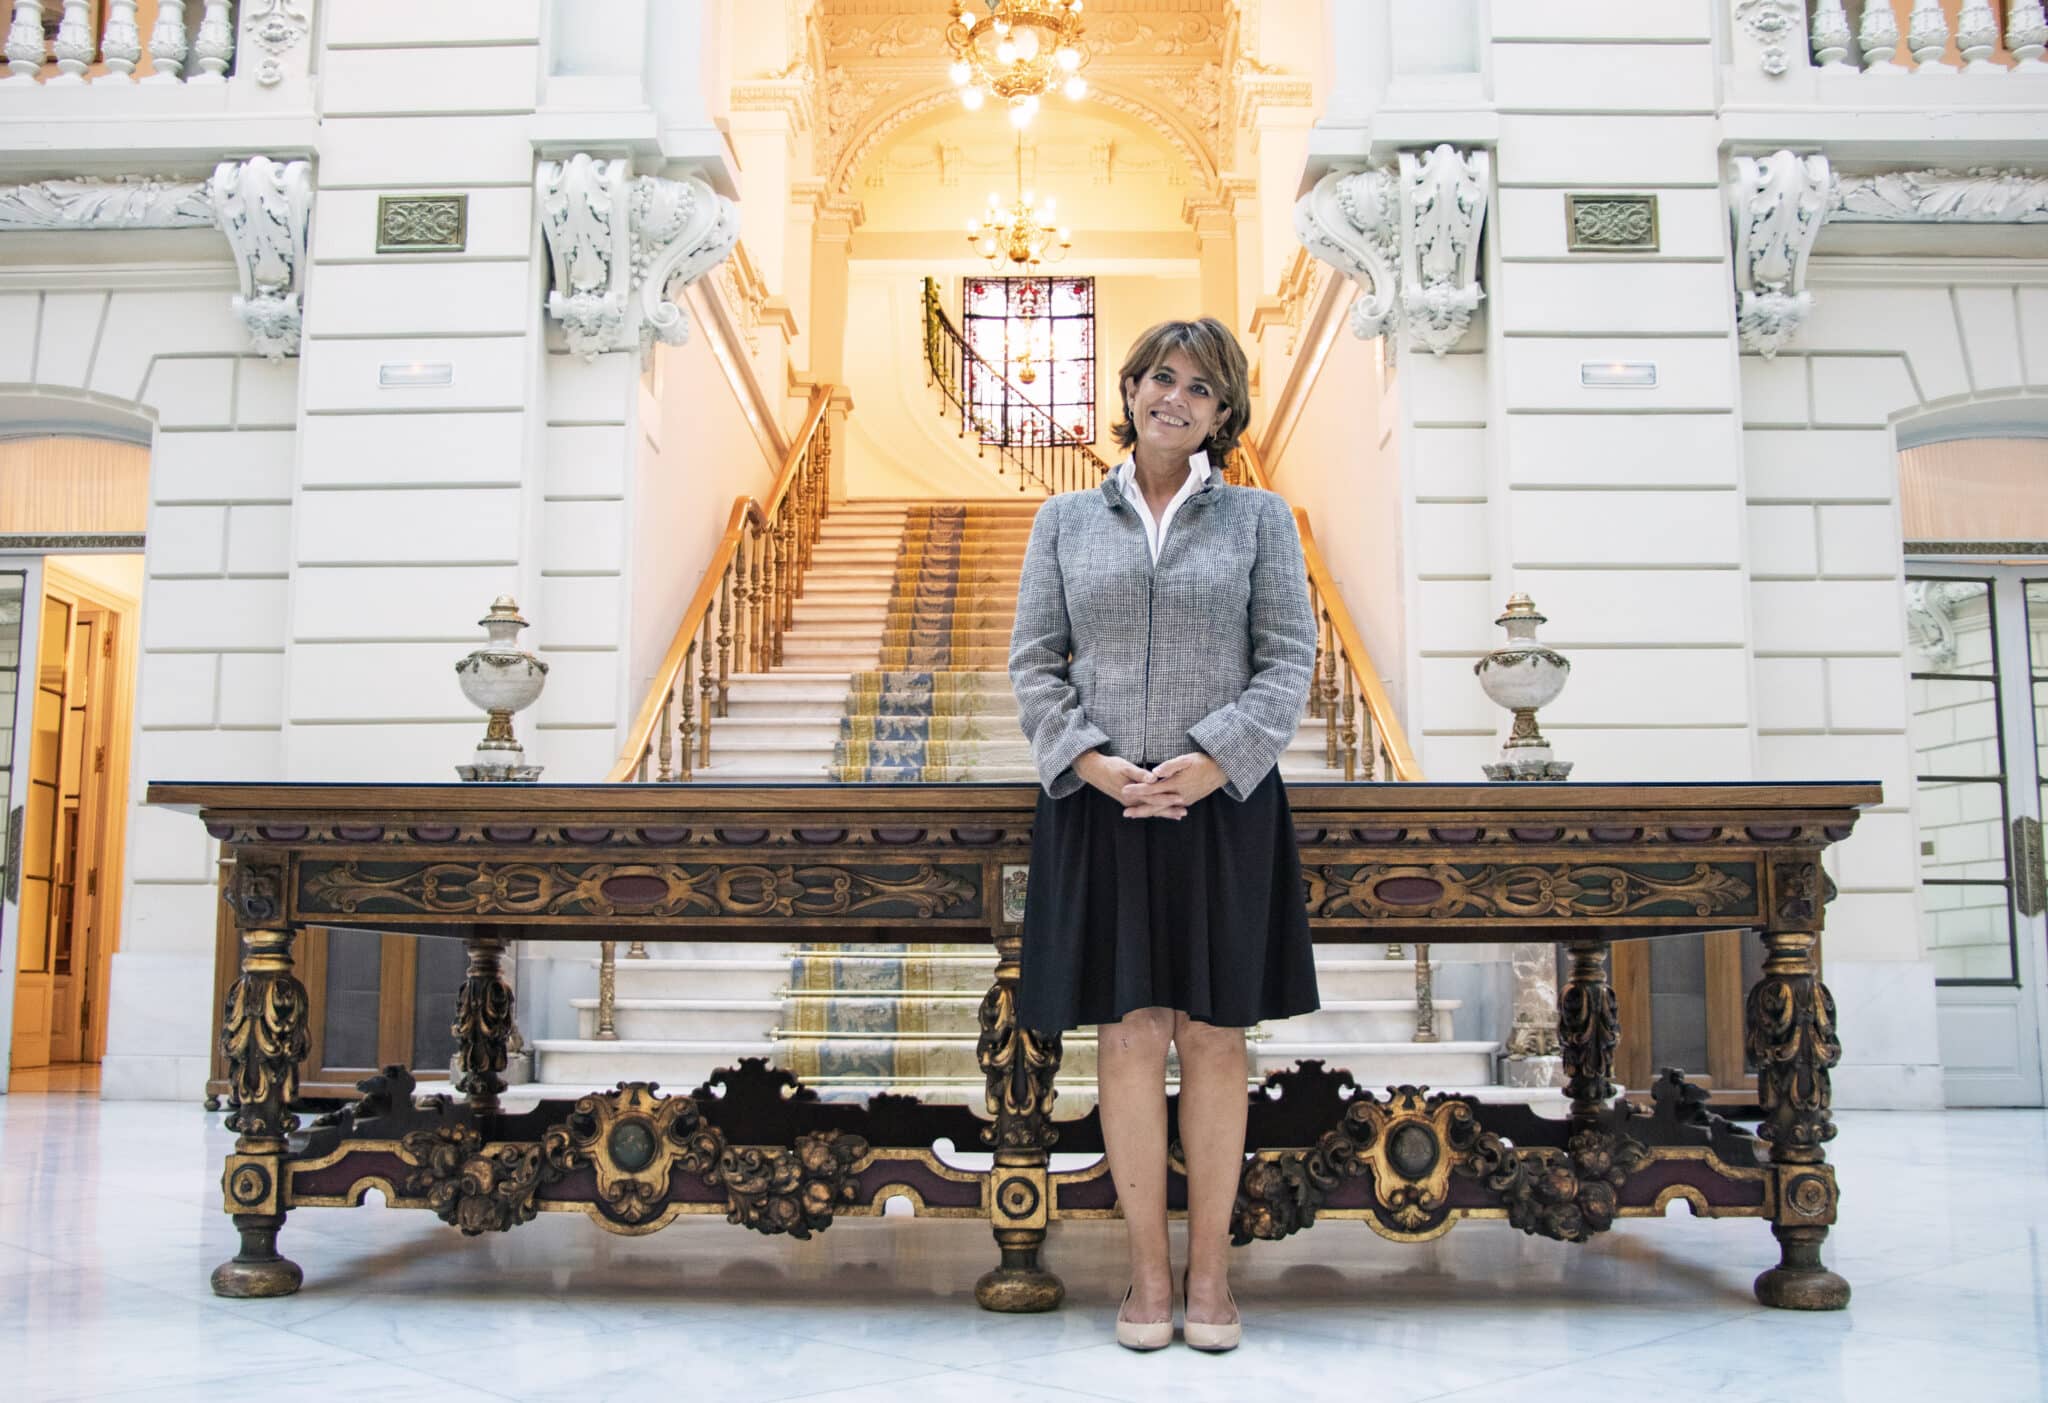 La Fiscal General del Estado, Dolores Delgado, en la sede de la Fiscalía en Madrid